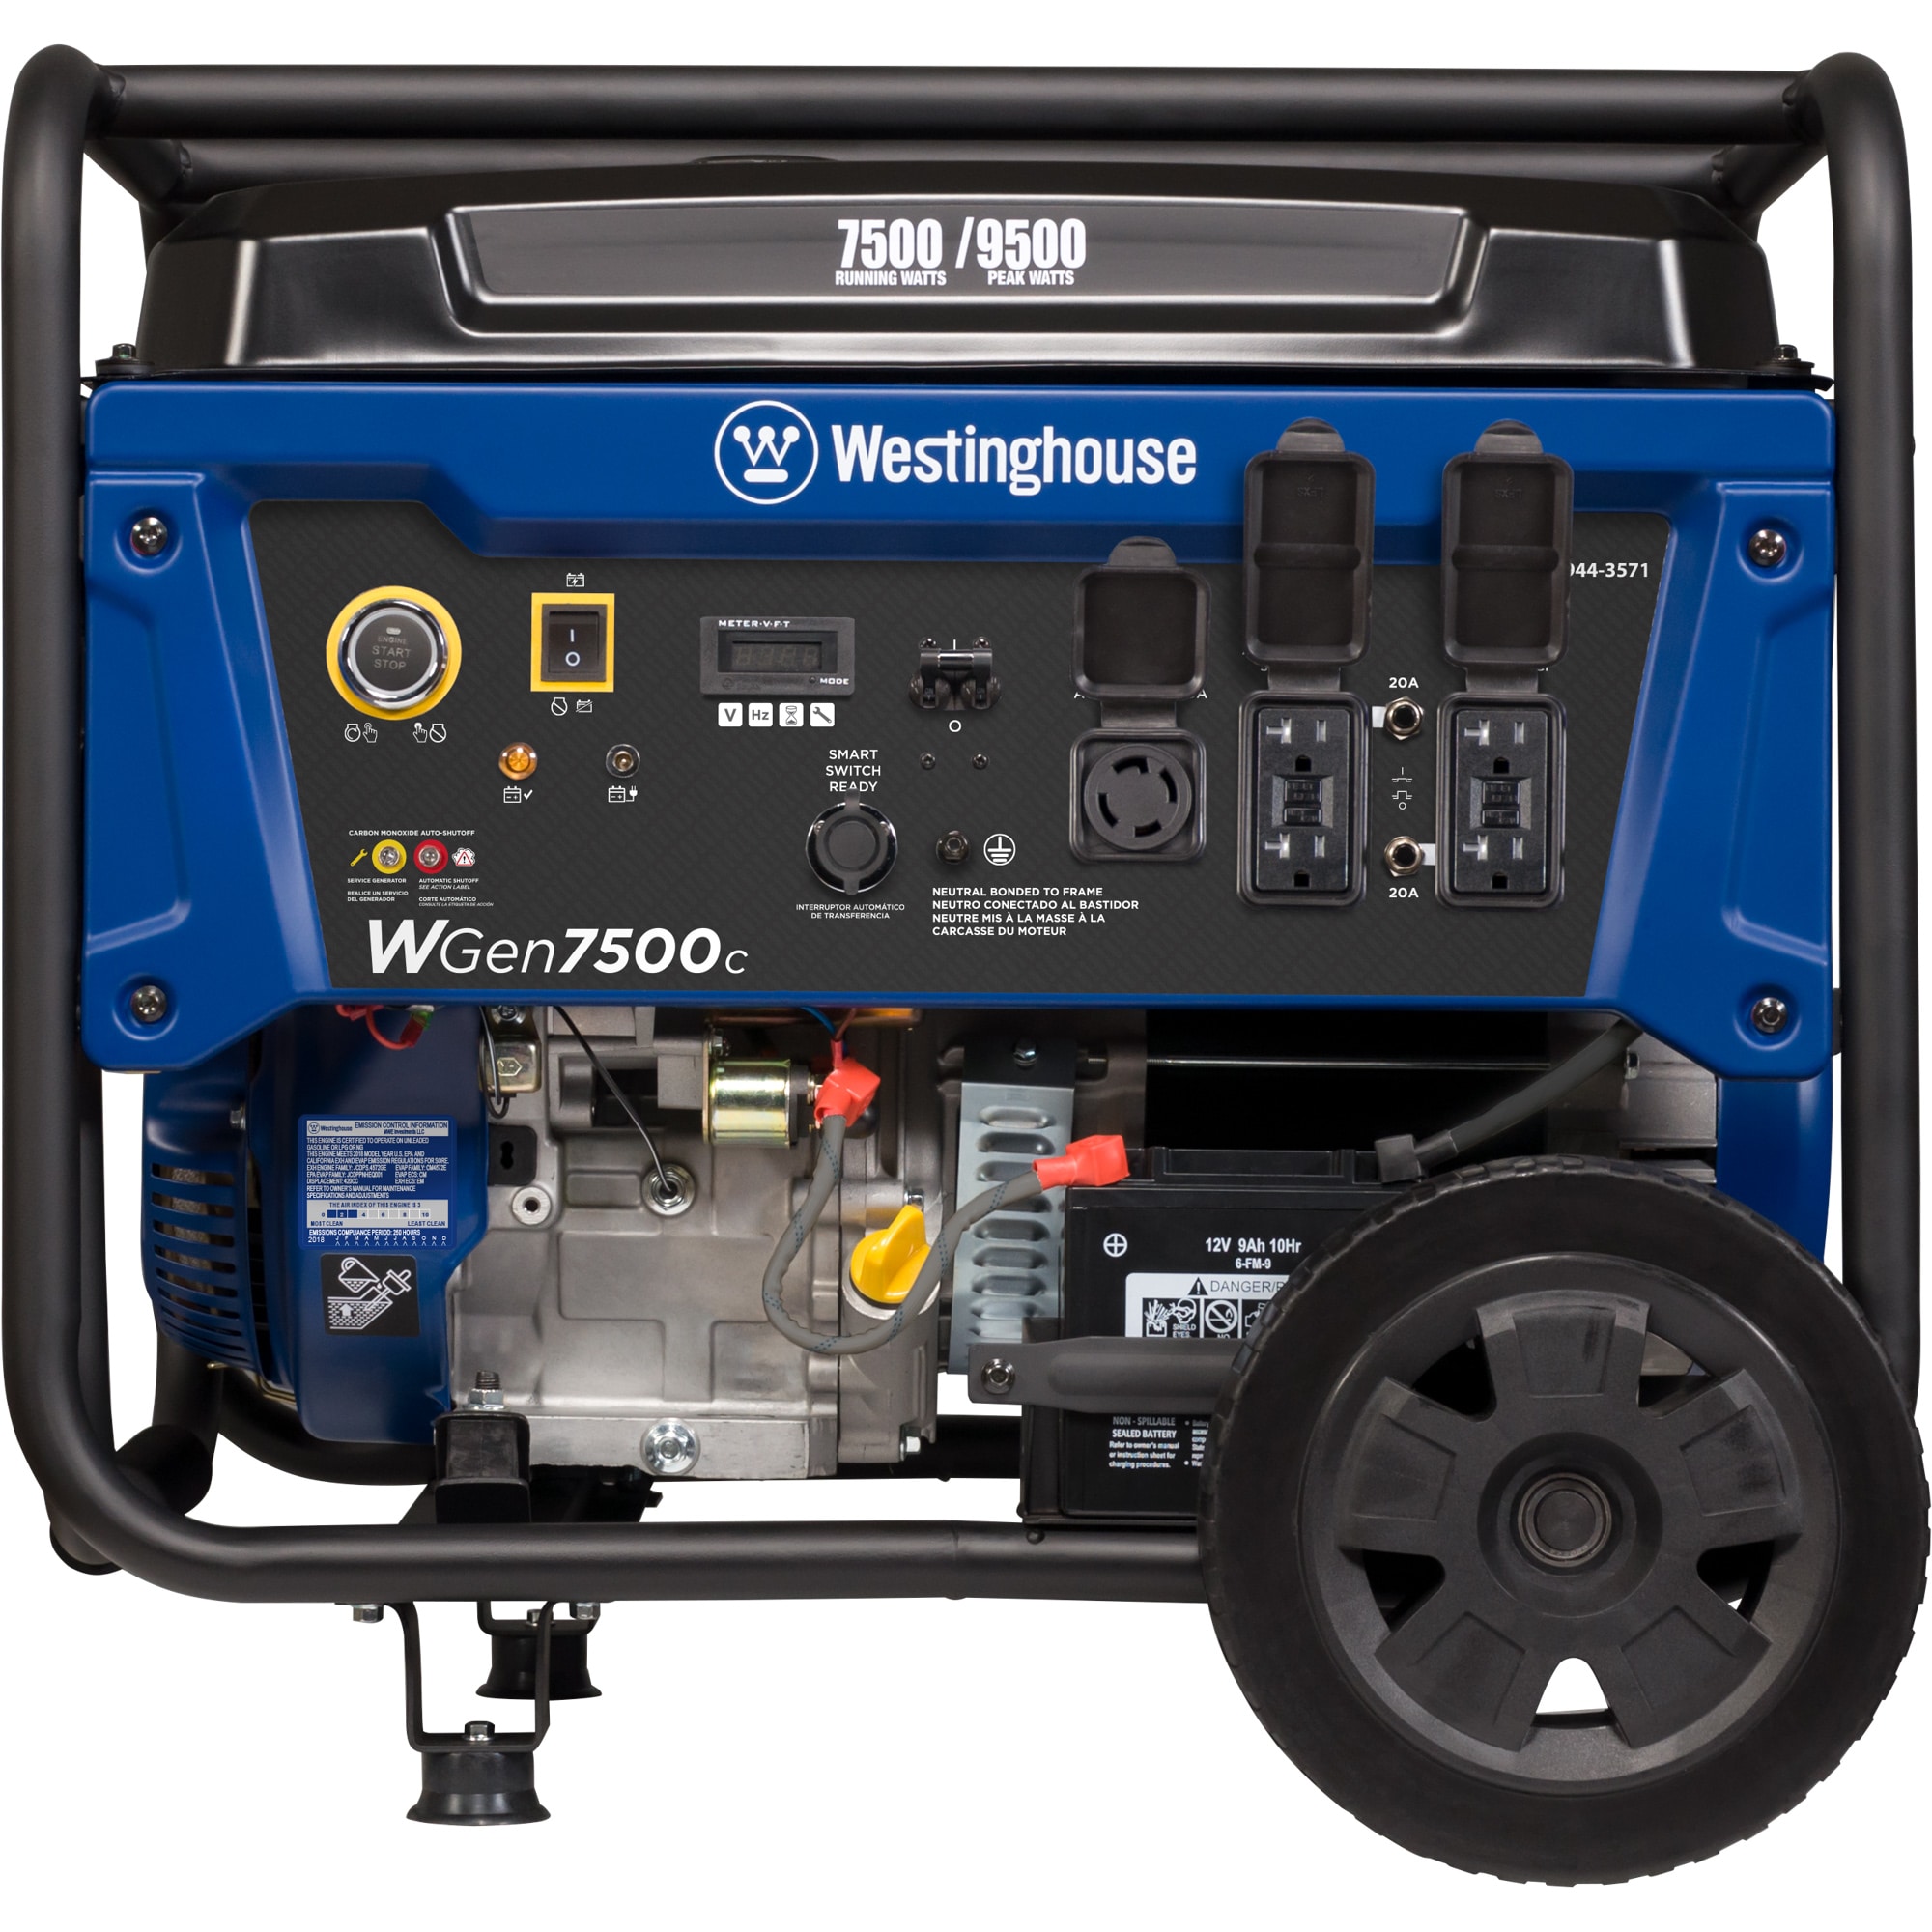 Westinghouse WGen7500c 7500-Watt Single Fuel (Gasoline) Portable